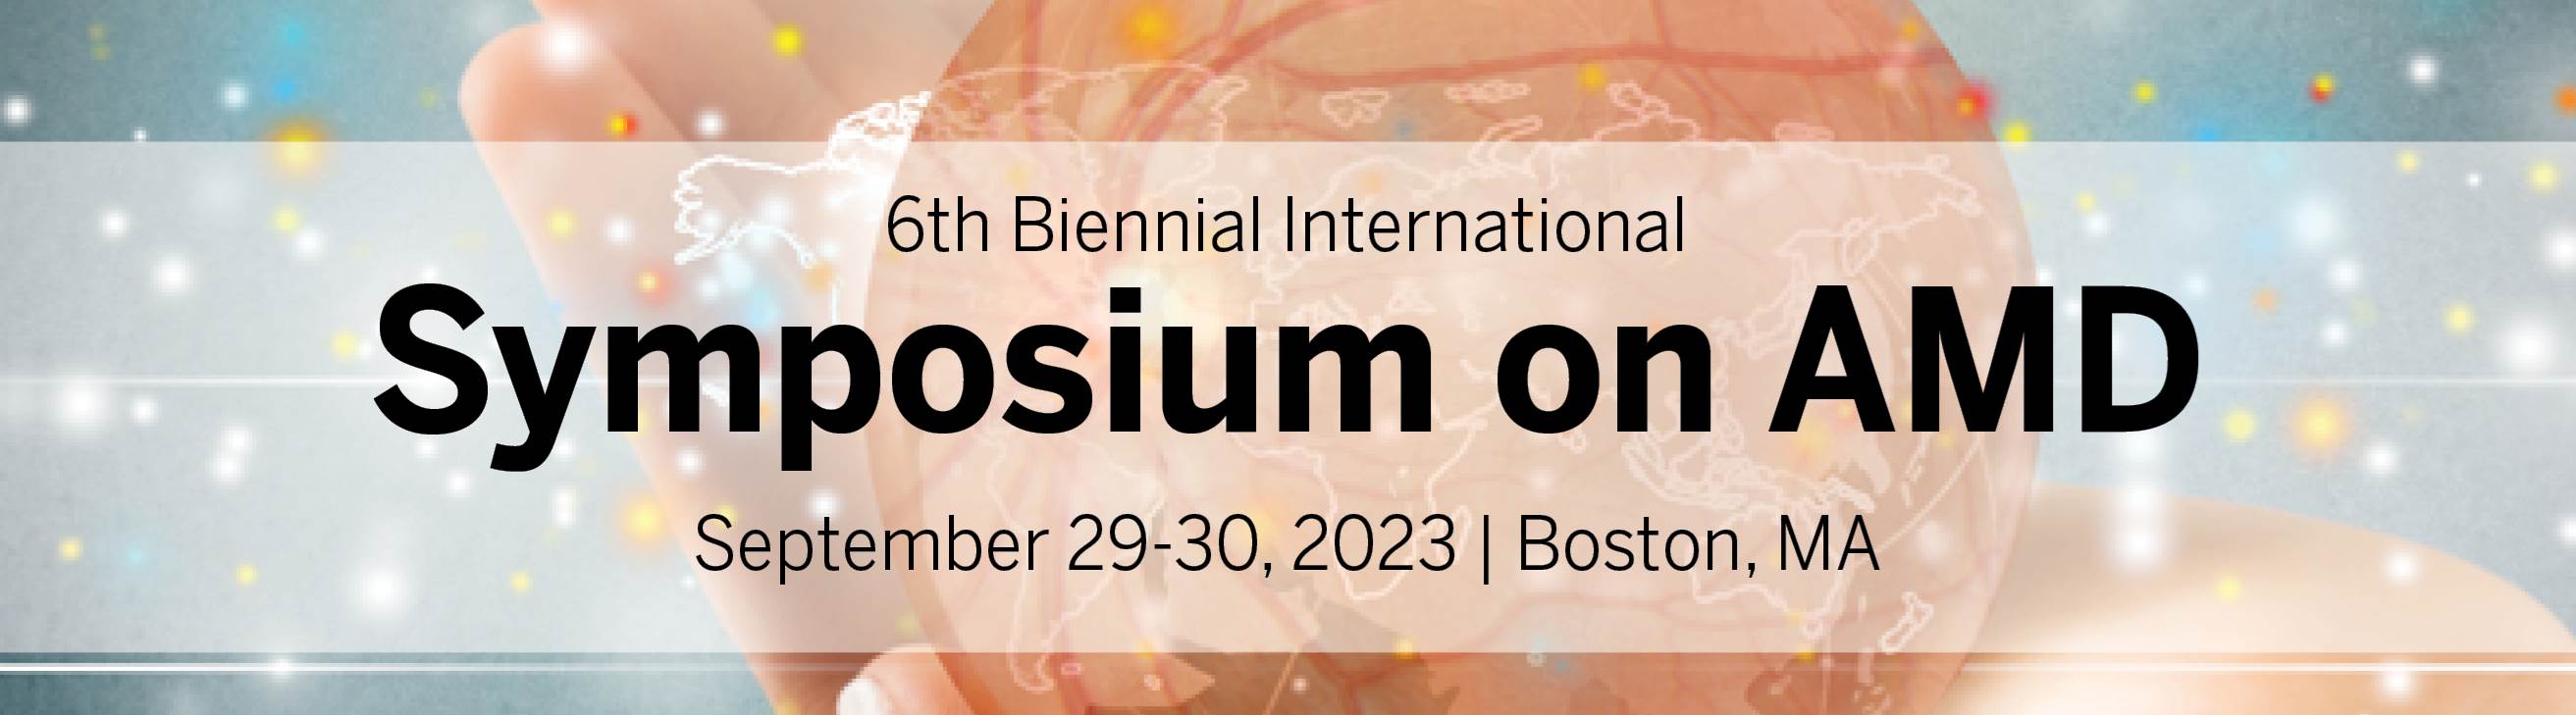 6th Biennial International Symposium on AMD